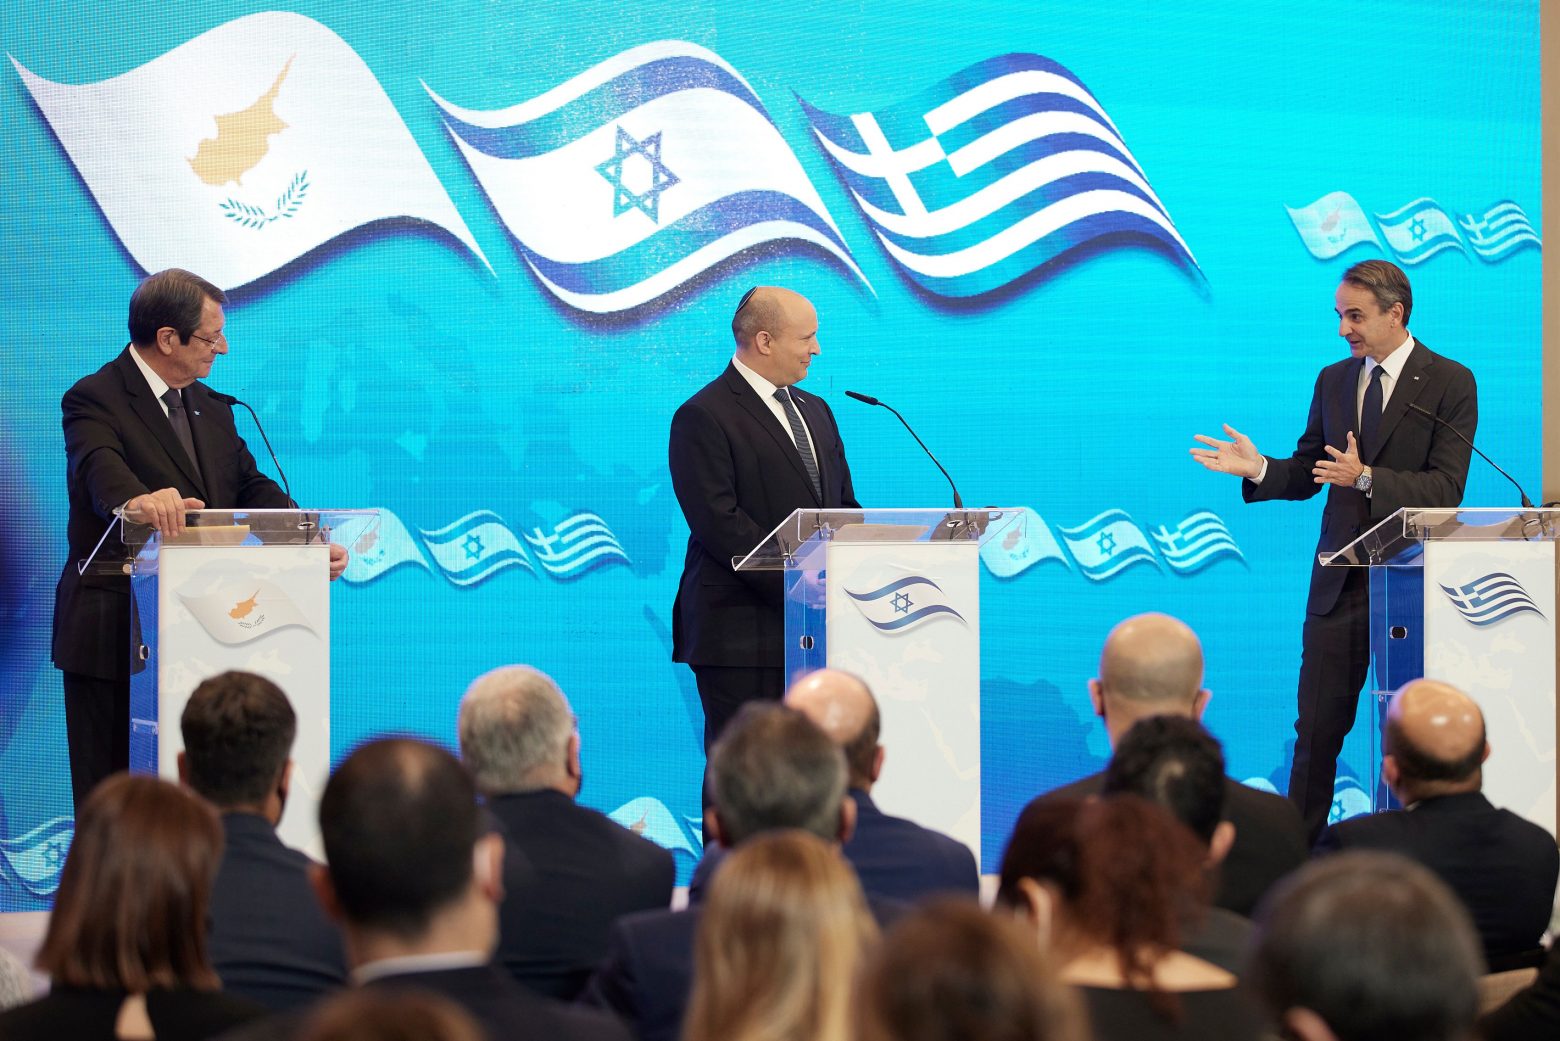 Κοινή Διακήρυξη της Τριμερούς Ελλάδας, Κύπρου και Ισραήλ – Ενισχύεται η αμυντική και στρατιωτική συνεργασία